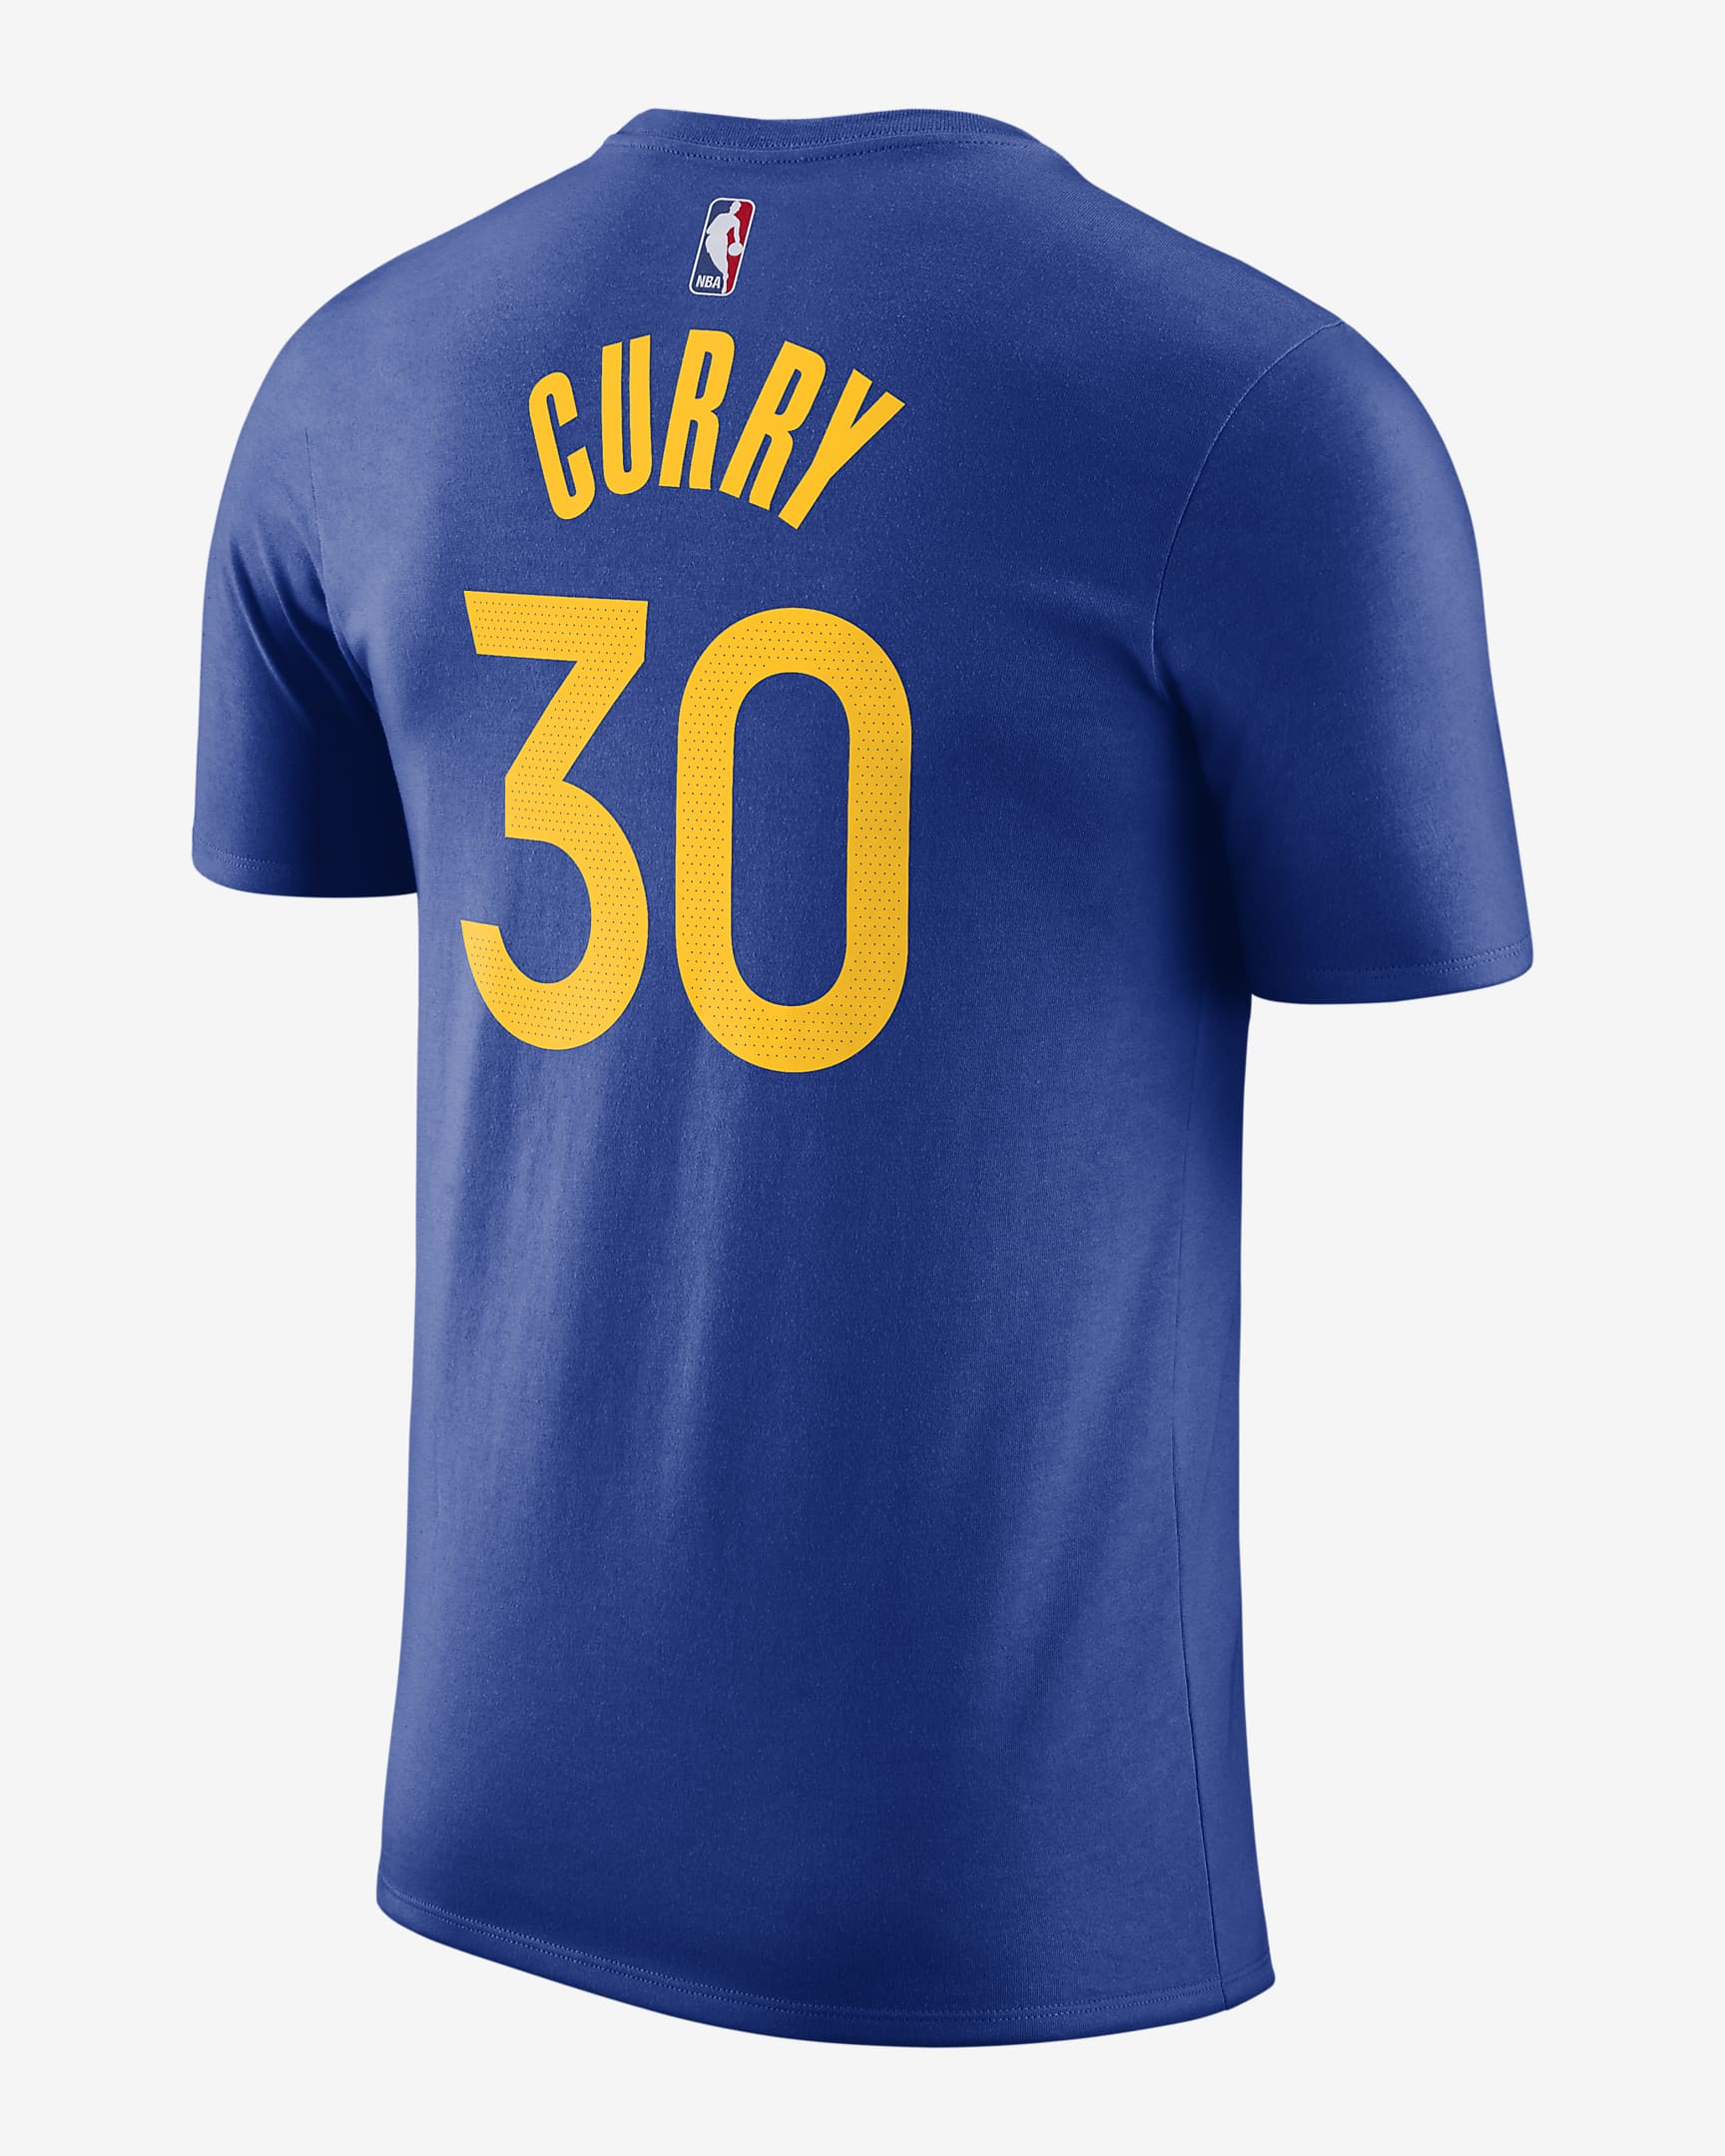 Golden State Warriors Men's Nike NBA T-Shirt. Nike FI